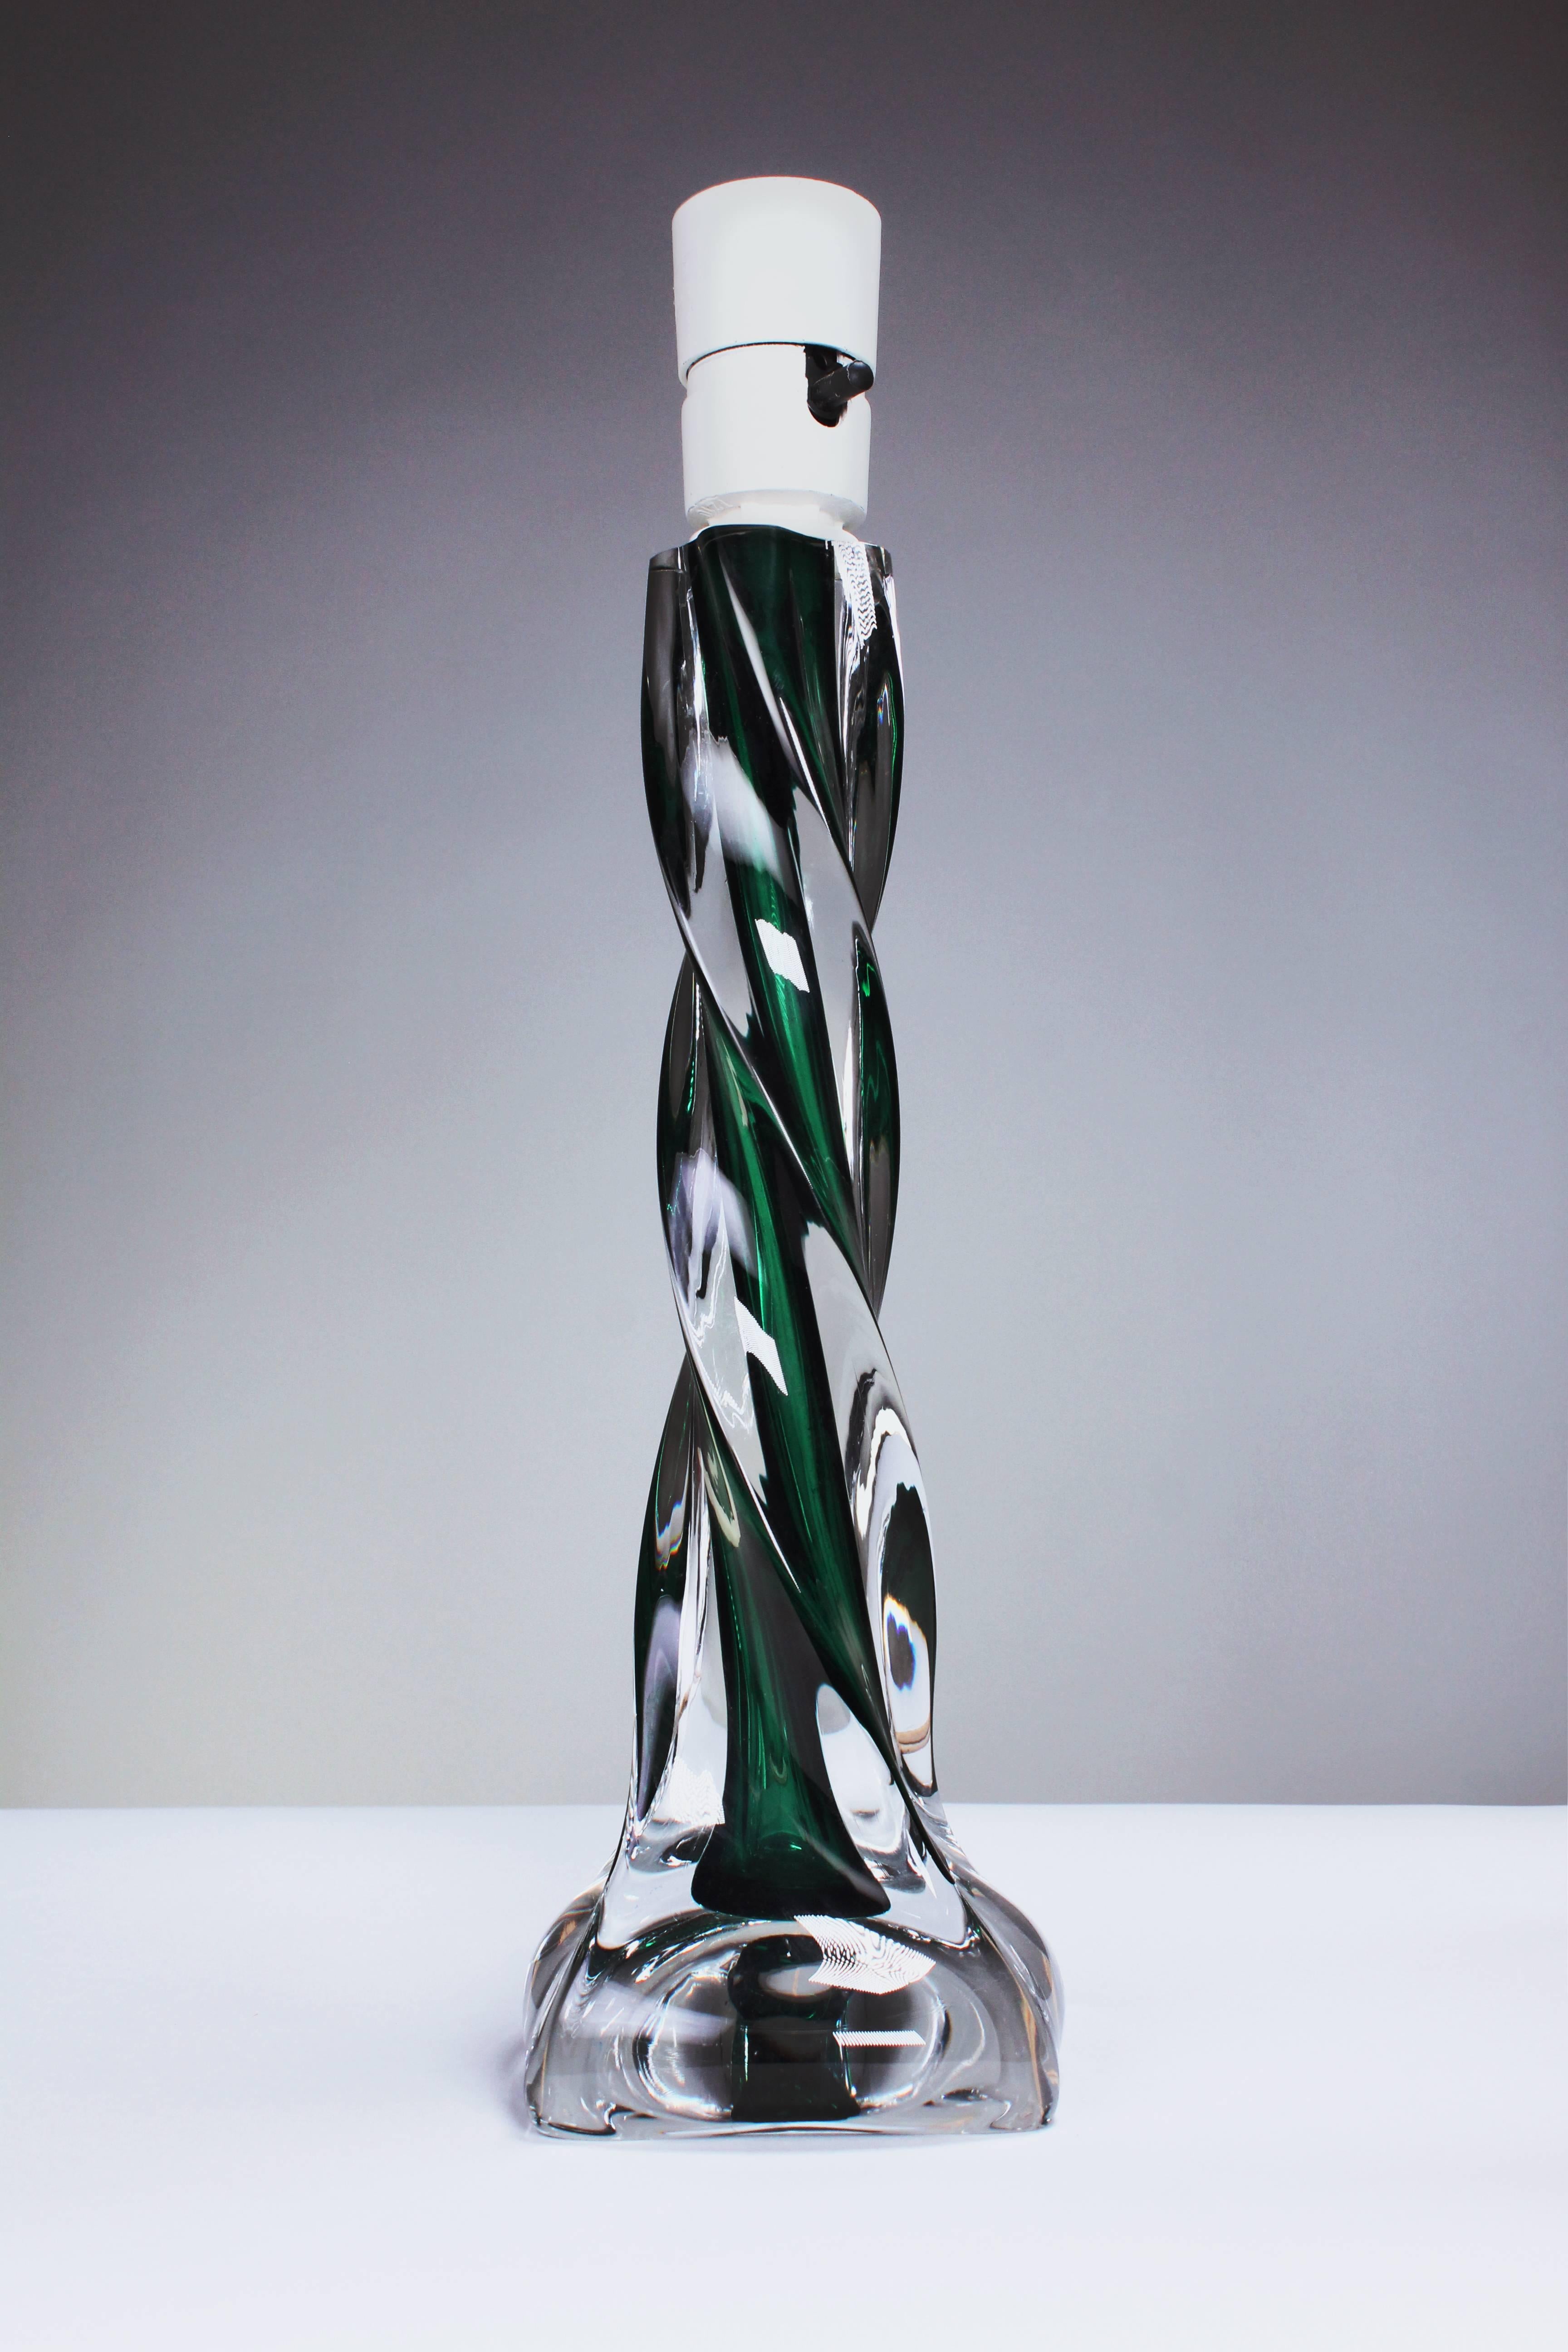 Elegante lampe de table en verre d'art suédois de style Sommerso, vert émeraude, tourbillonnant. Conçue par Paul Kedelv, designer en chef de la société suédoise Flygsfors au début des années 1950, connue pour ses formes organiques et son utilisation